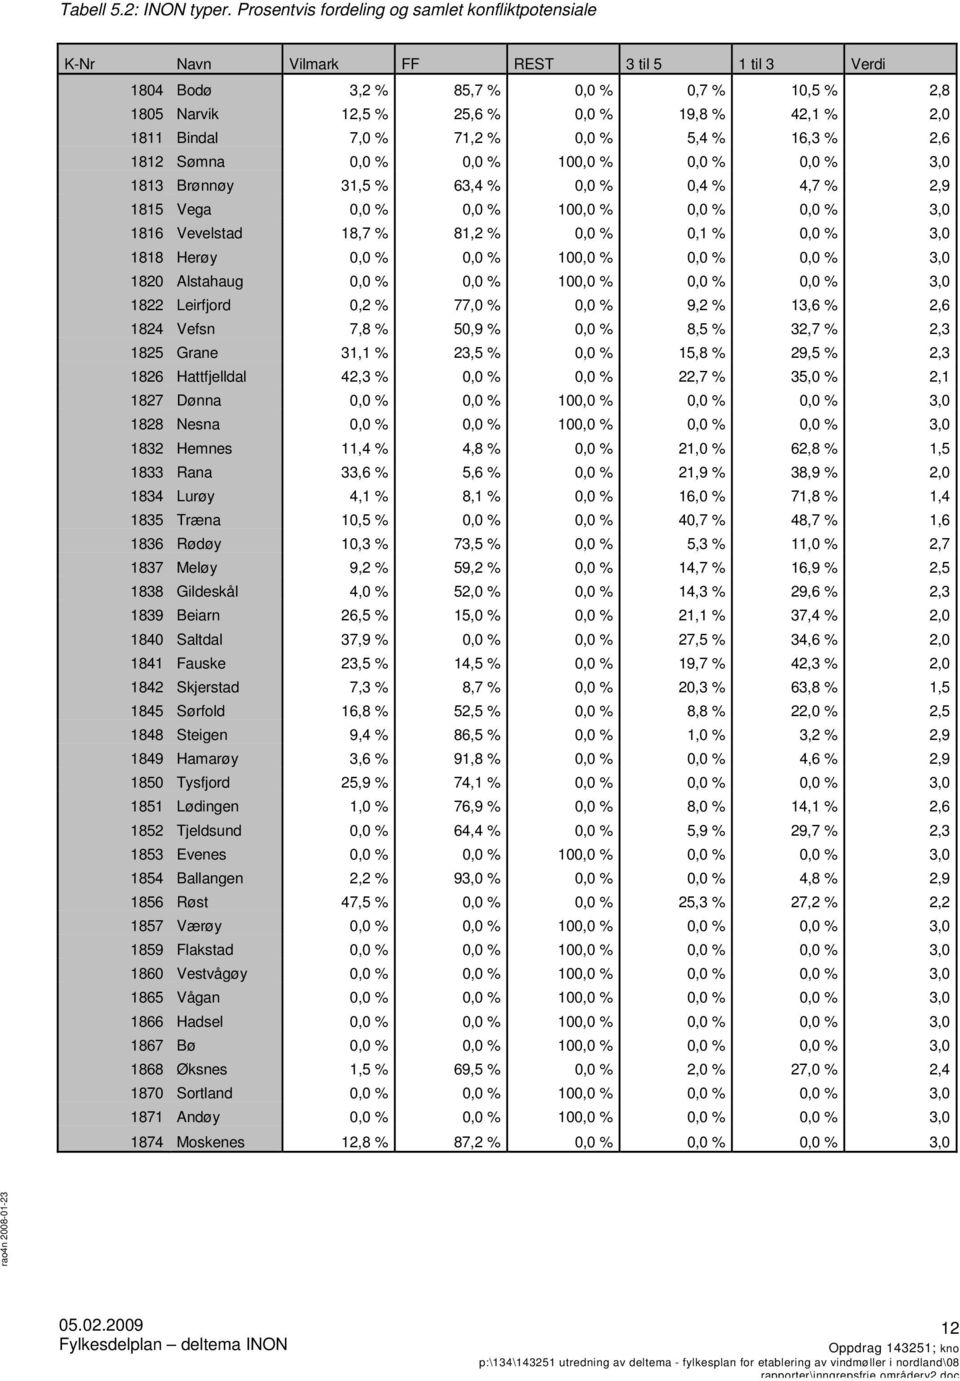 Bindal 7,0 % 71,2 % 0,0 % 5,4 % 16,3 % 2,6 1812 Sømna 0,0 % 0,0 % 100,0 % 0,0 % 0,0 % 3,0 1813 Brønnøy 31,5 % 63,4 % 0,0 % 0,4 % 4,7 % 2,9 1815 Vega 0,0 % 0,0 % 100,0 % 0,0 % 0,0 % 3,0 1816 Vevelstad